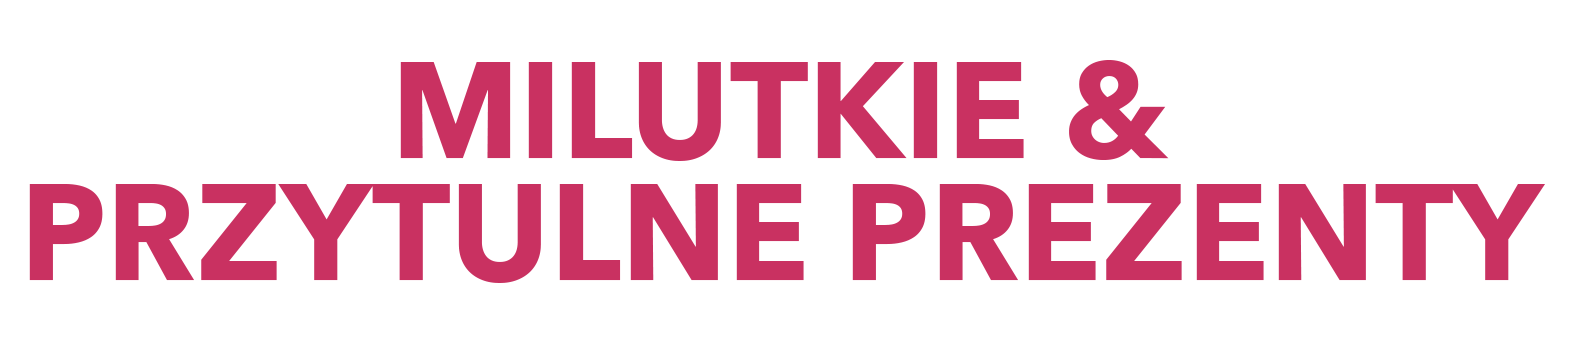 Text reads: Milutkie & przytulne prezenty